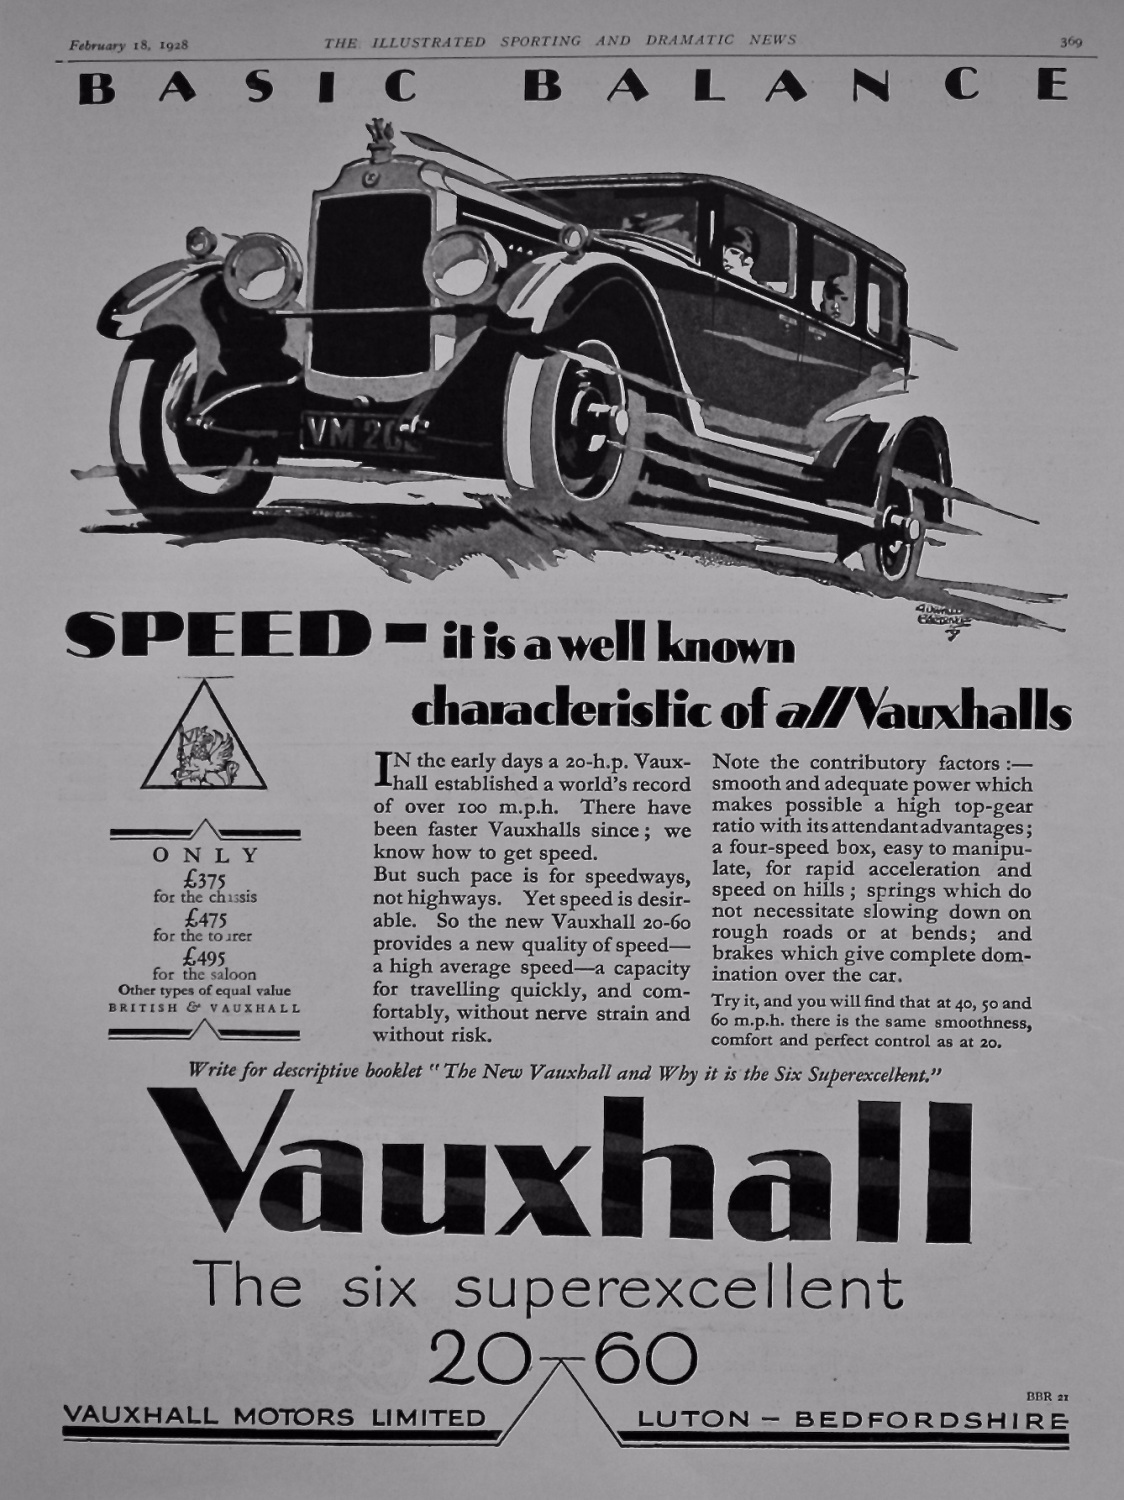 Vauxhall Motors Limited. 1928.